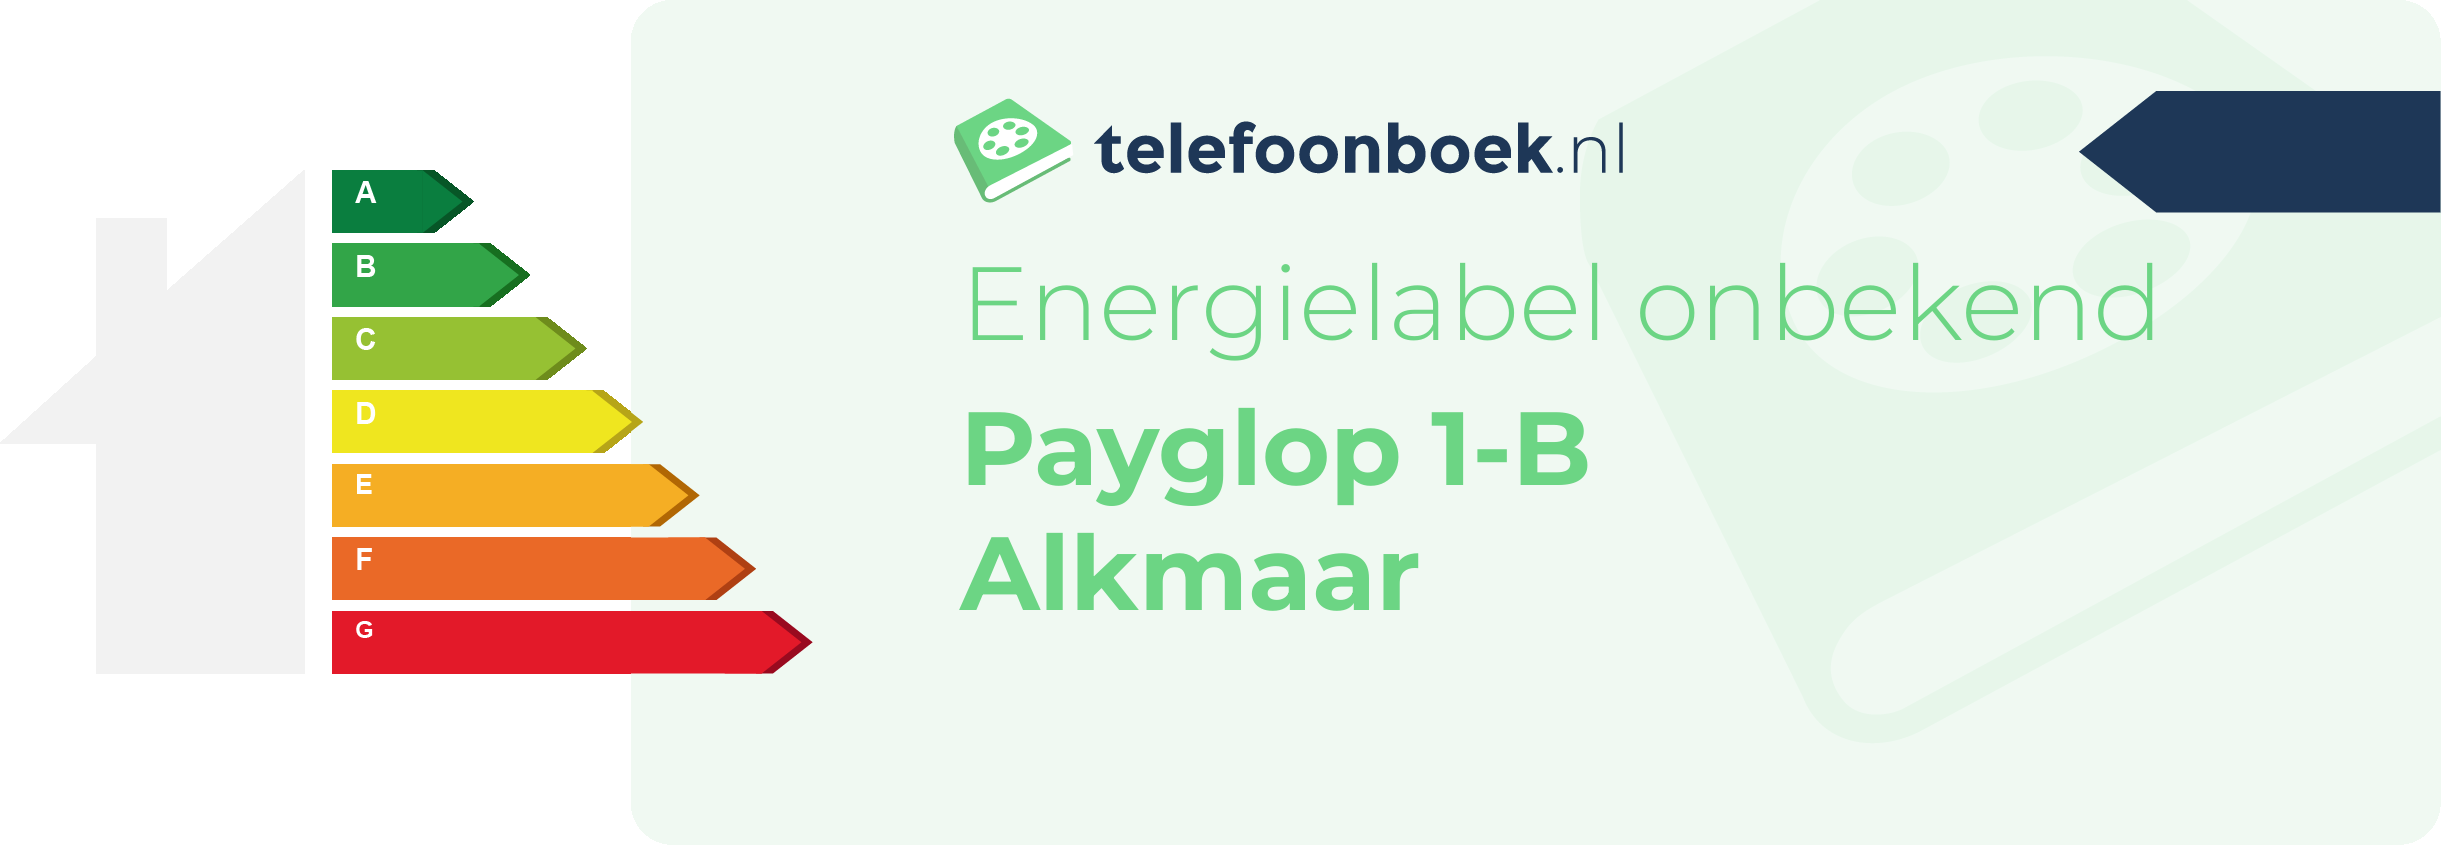 Energielabel Payglop 1-B Alkmaar